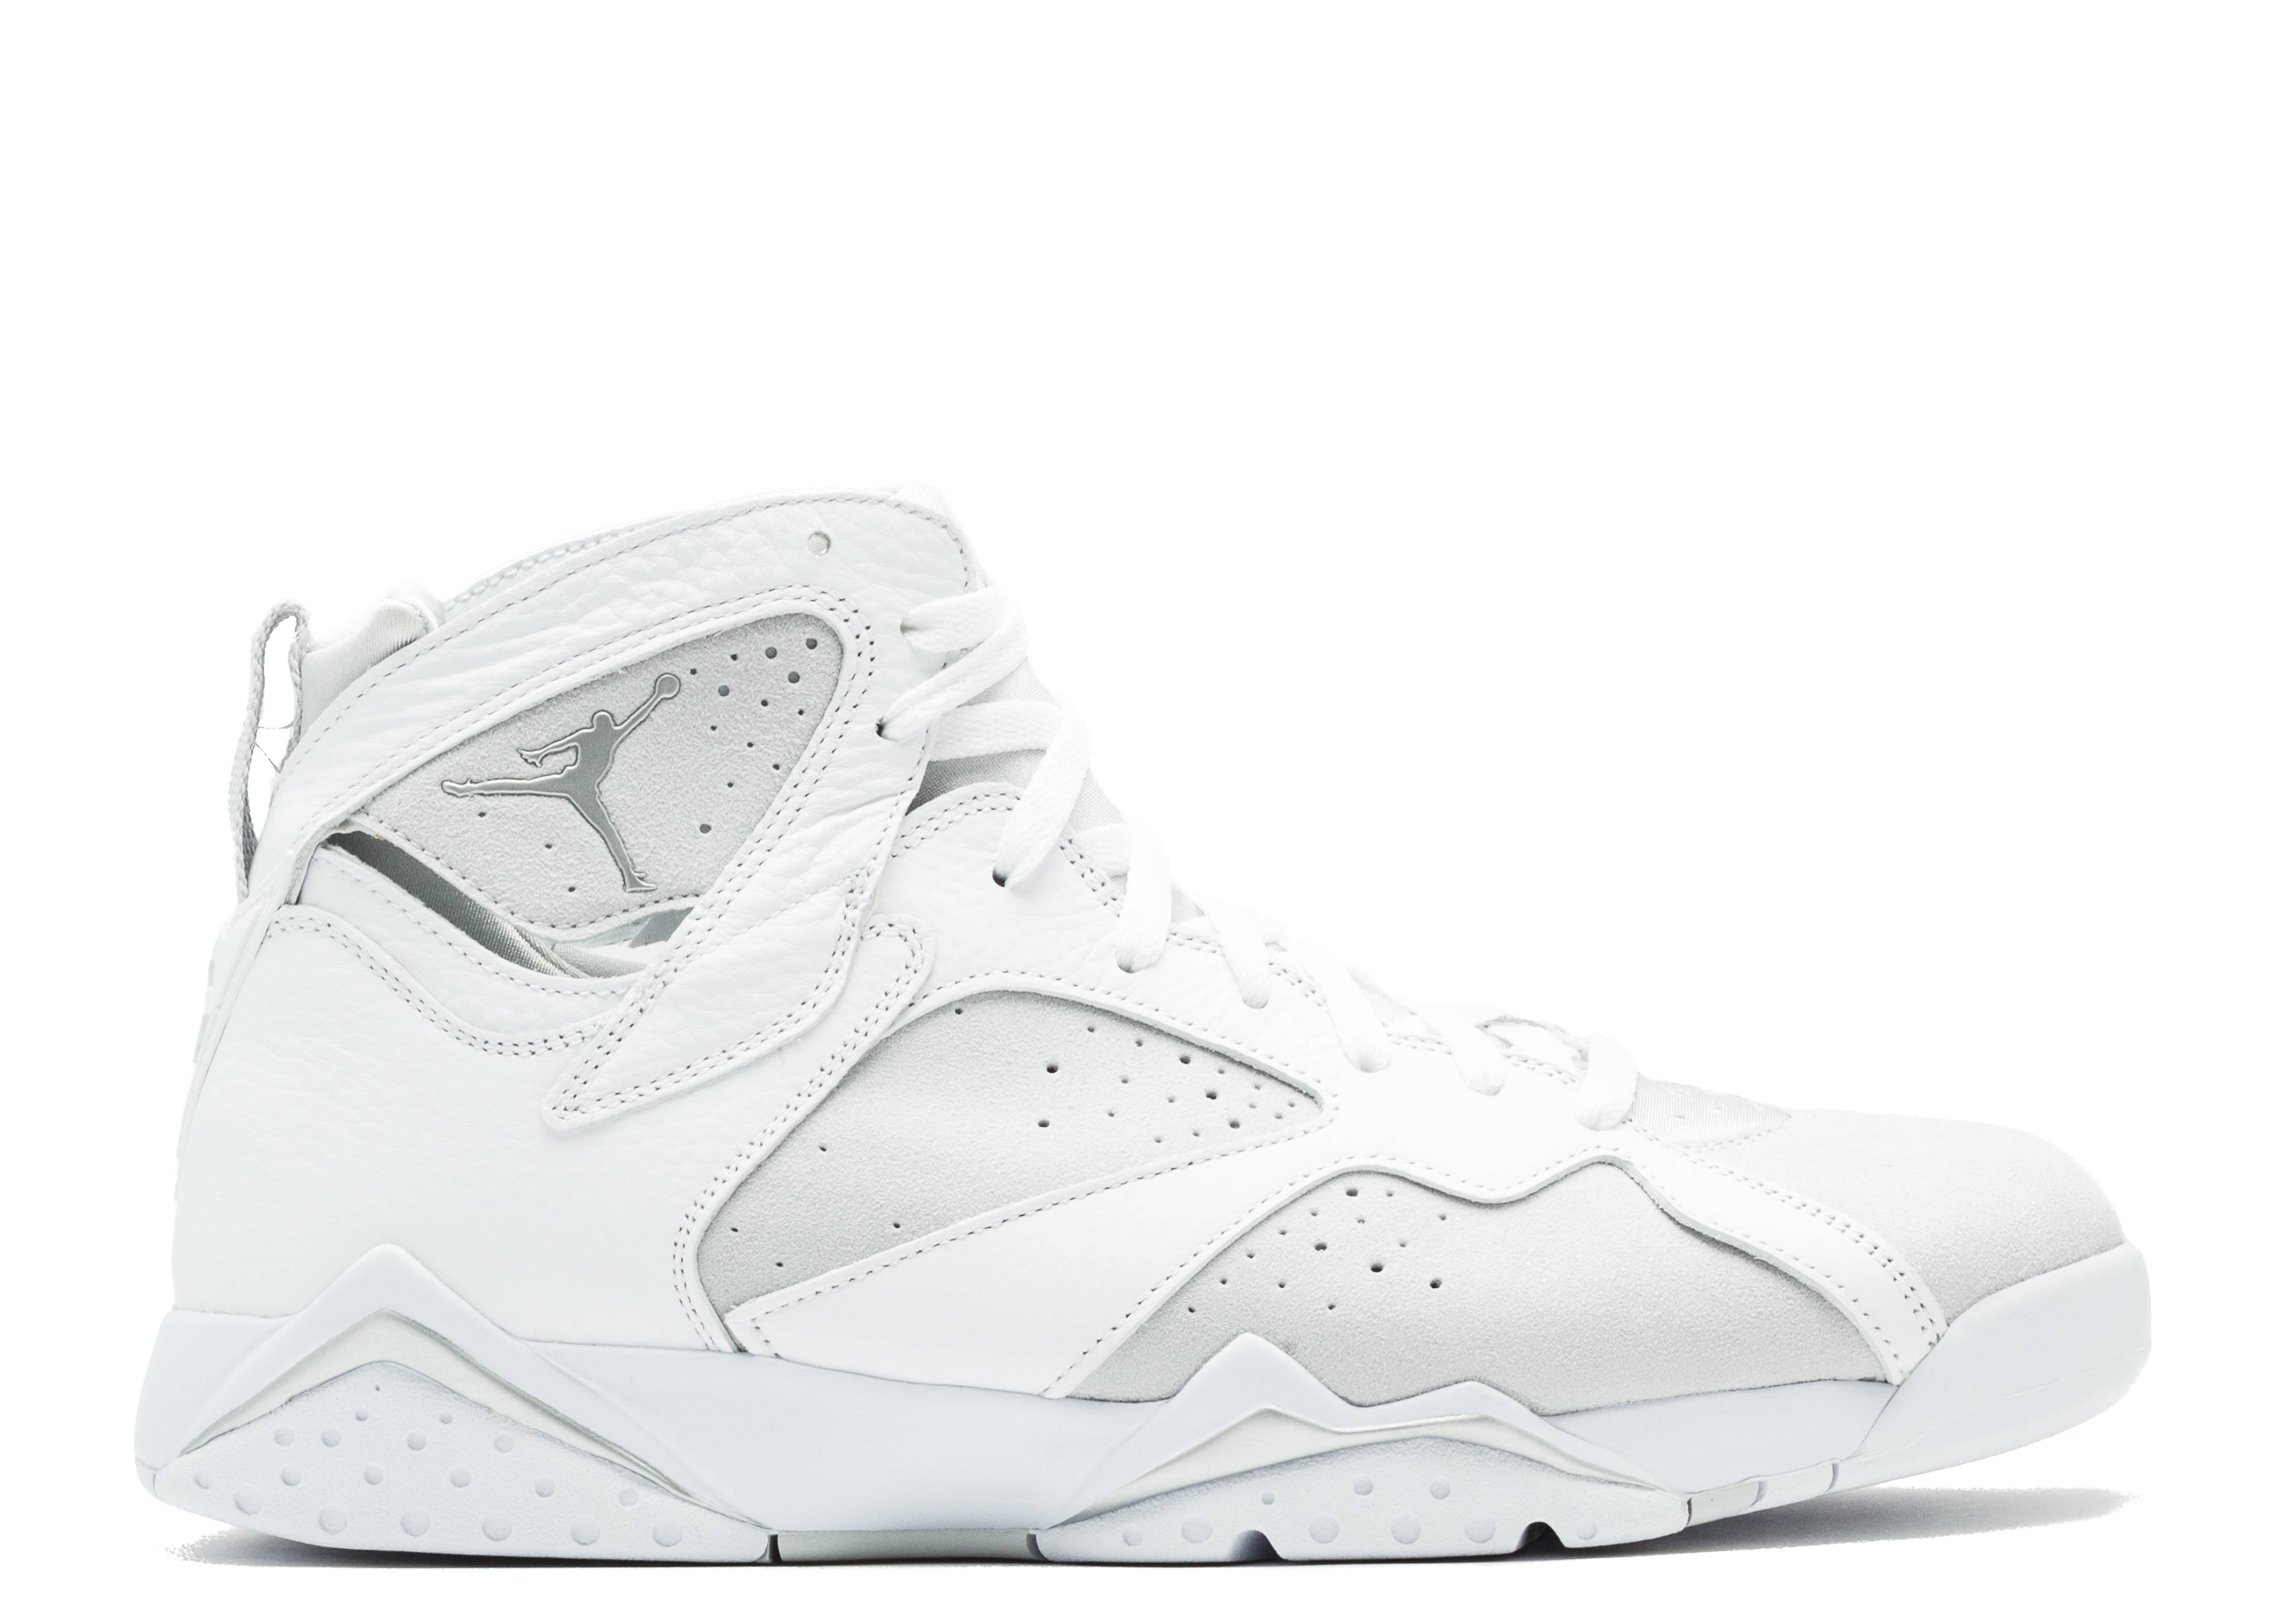 Air Jordan 7 Retro 'Pure Money'Color:White,Size:3.5